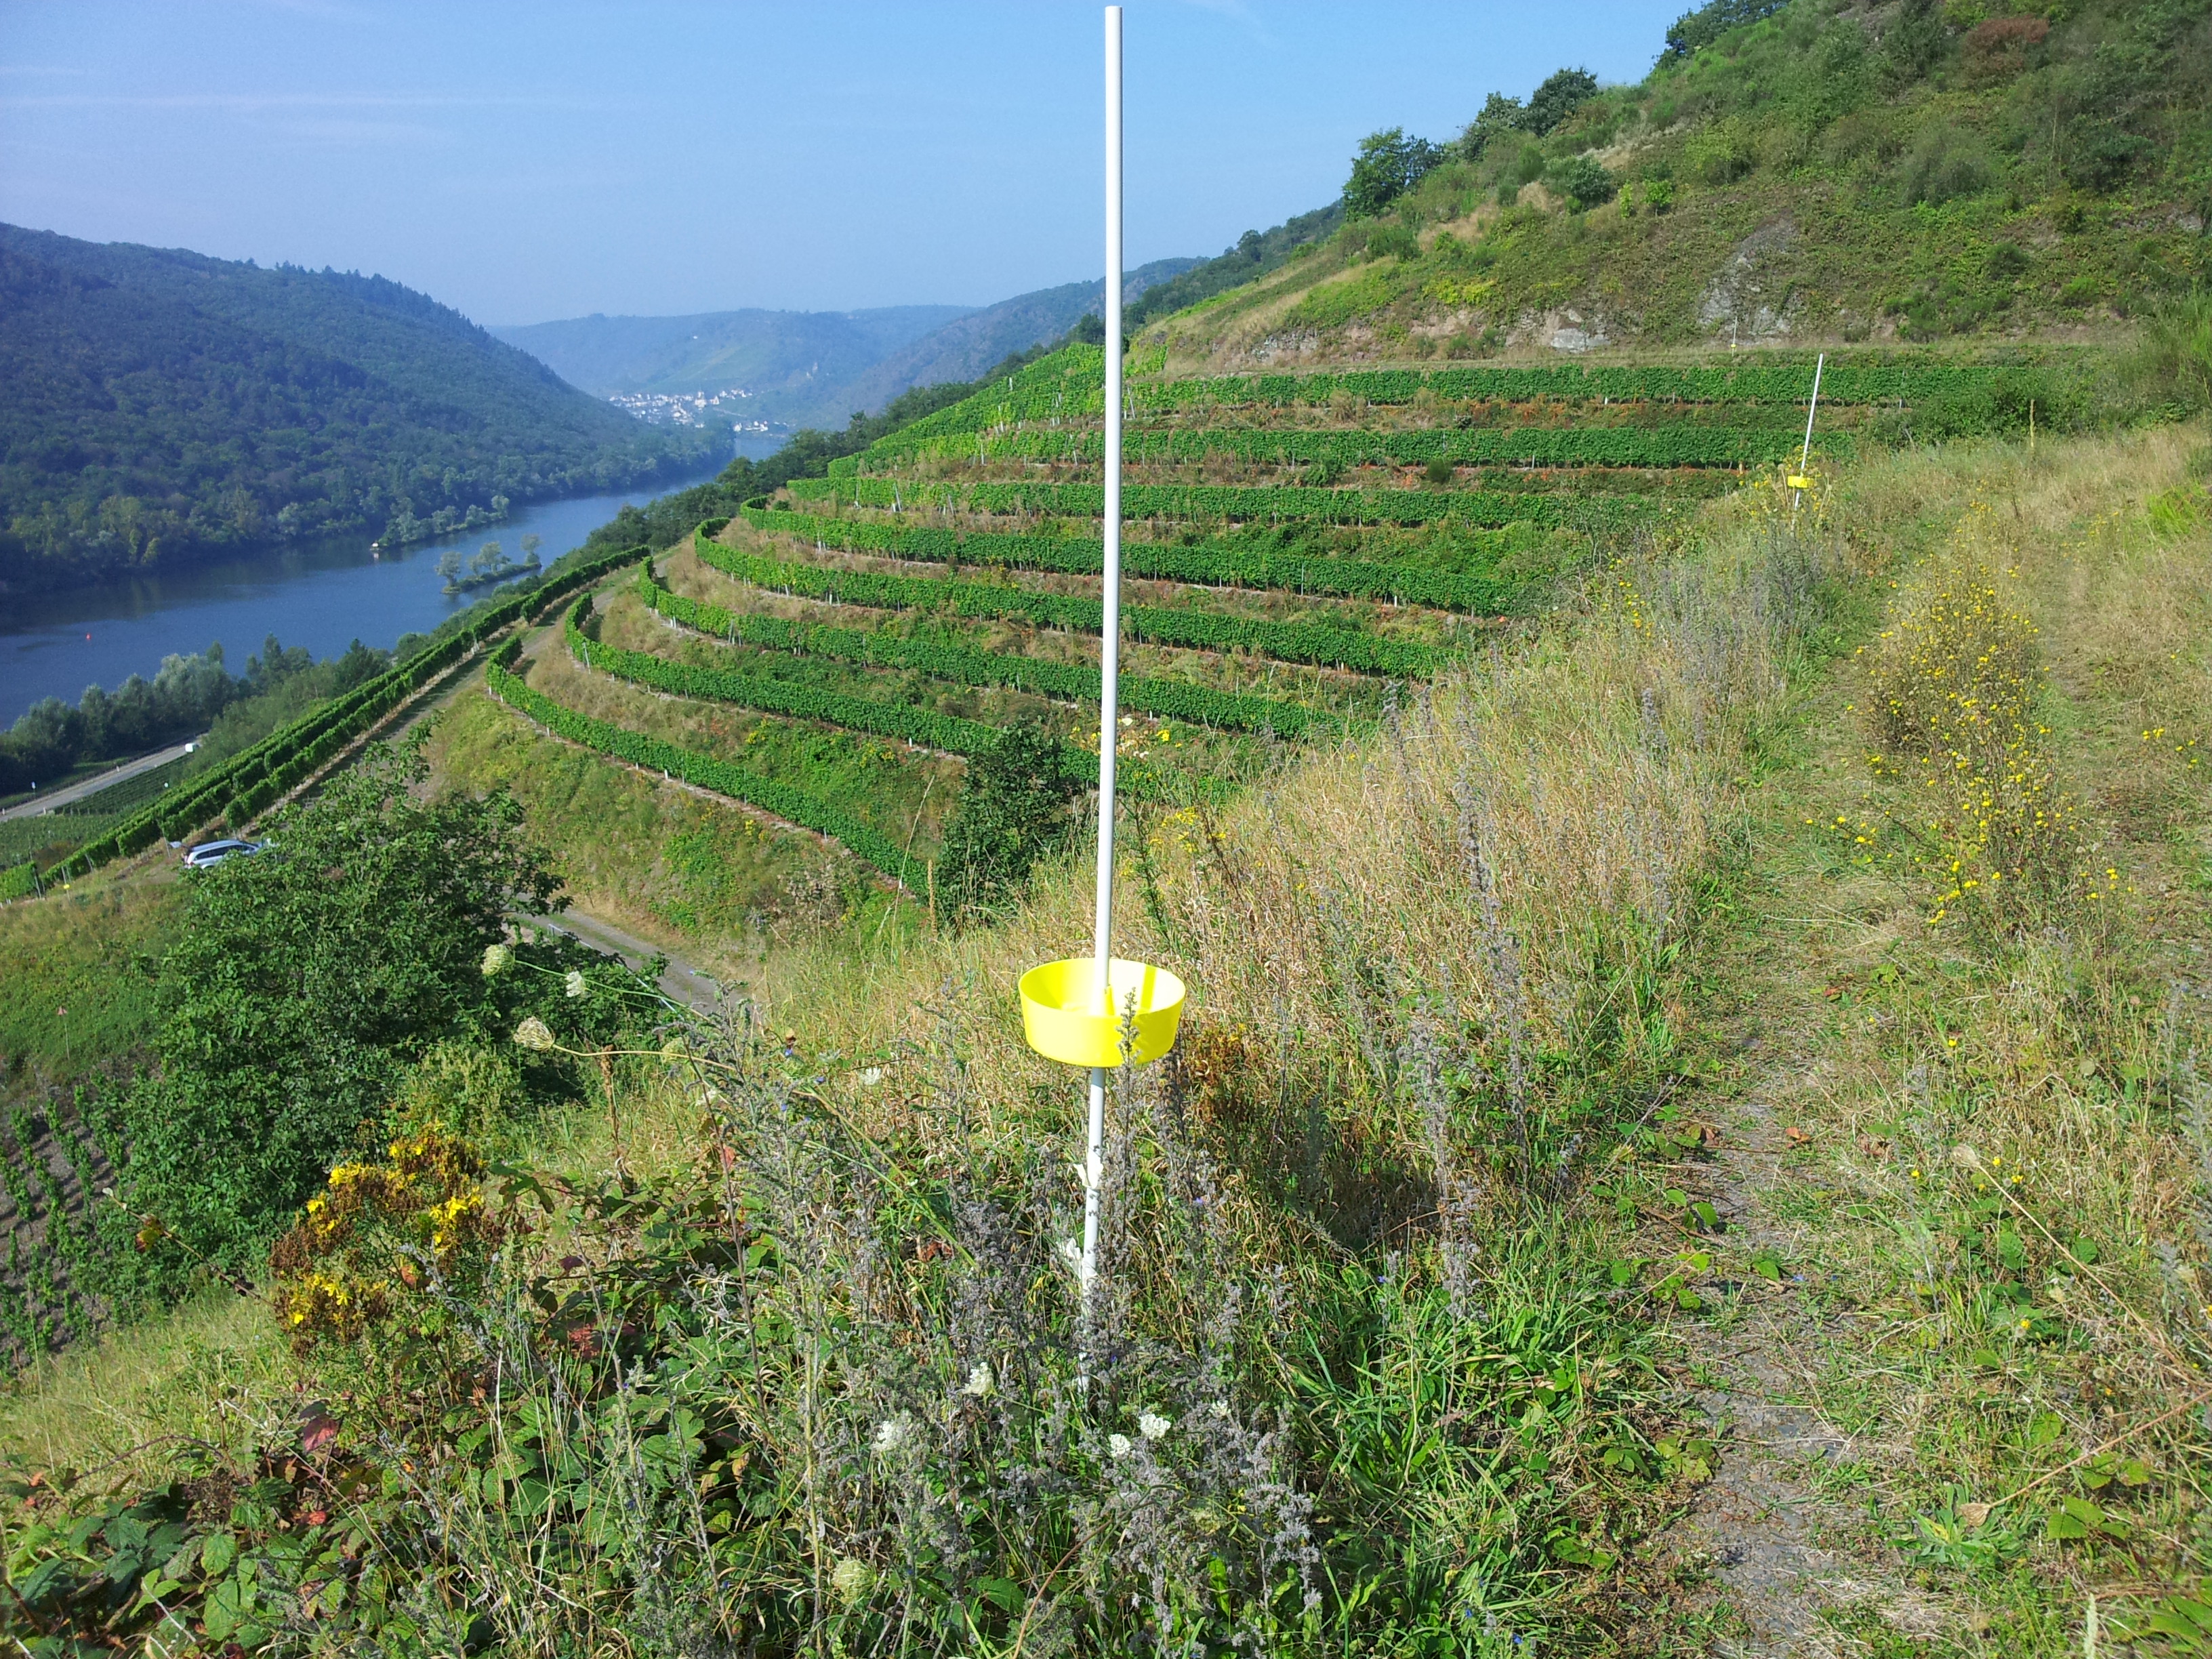 Monitoring-Farbschalen am Rande einer Weinbergbrache bei Pommern/ Mosel. Dieser Fallentyp erwies sich im Untersuchungsgebiet als die effizienteste Methode zur Bienenerfassung.